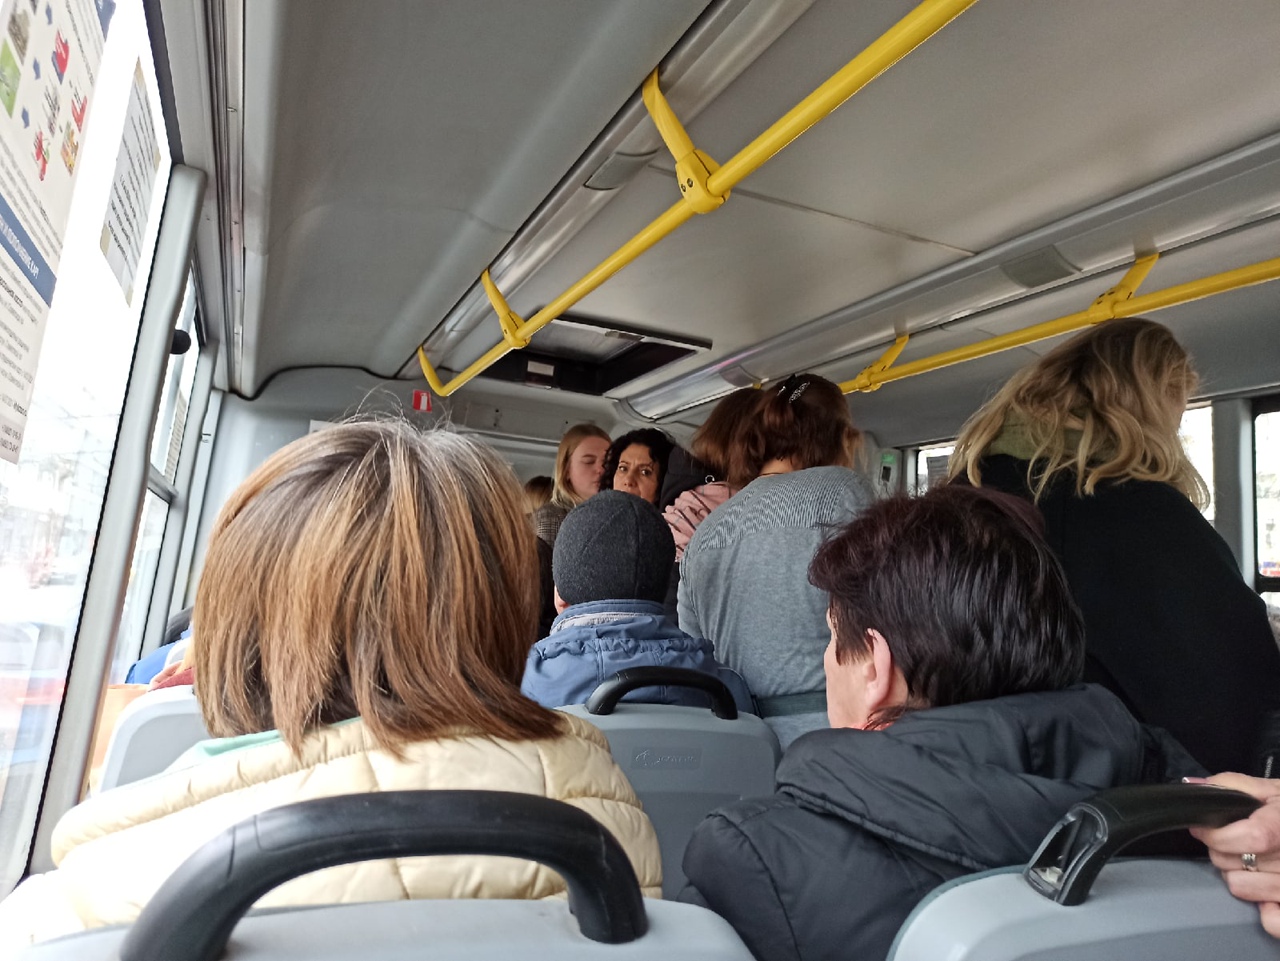 «Переводи, как хочешь»: из-за отказала платить переводом ярославну закрыли в автобусе